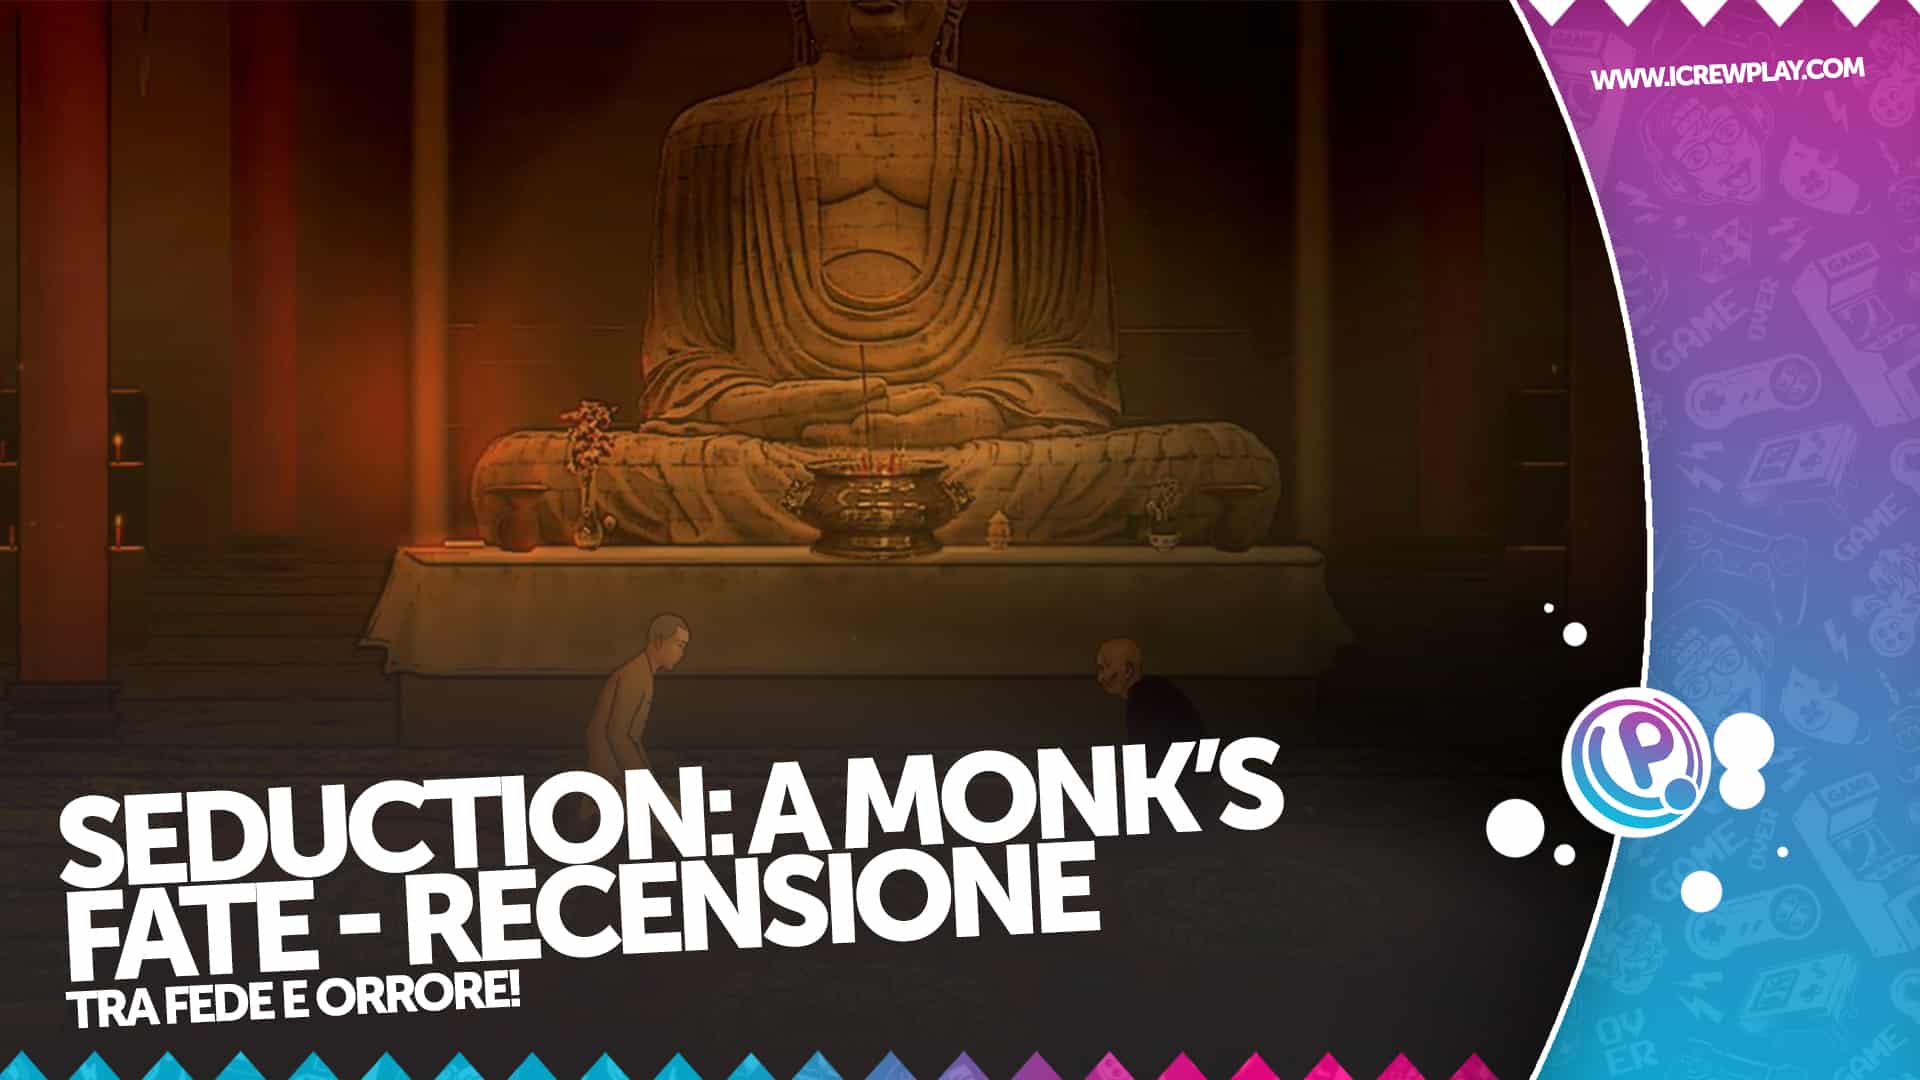 Seduction: A Monk's Fate - Recensione per Nintendo Switch 12